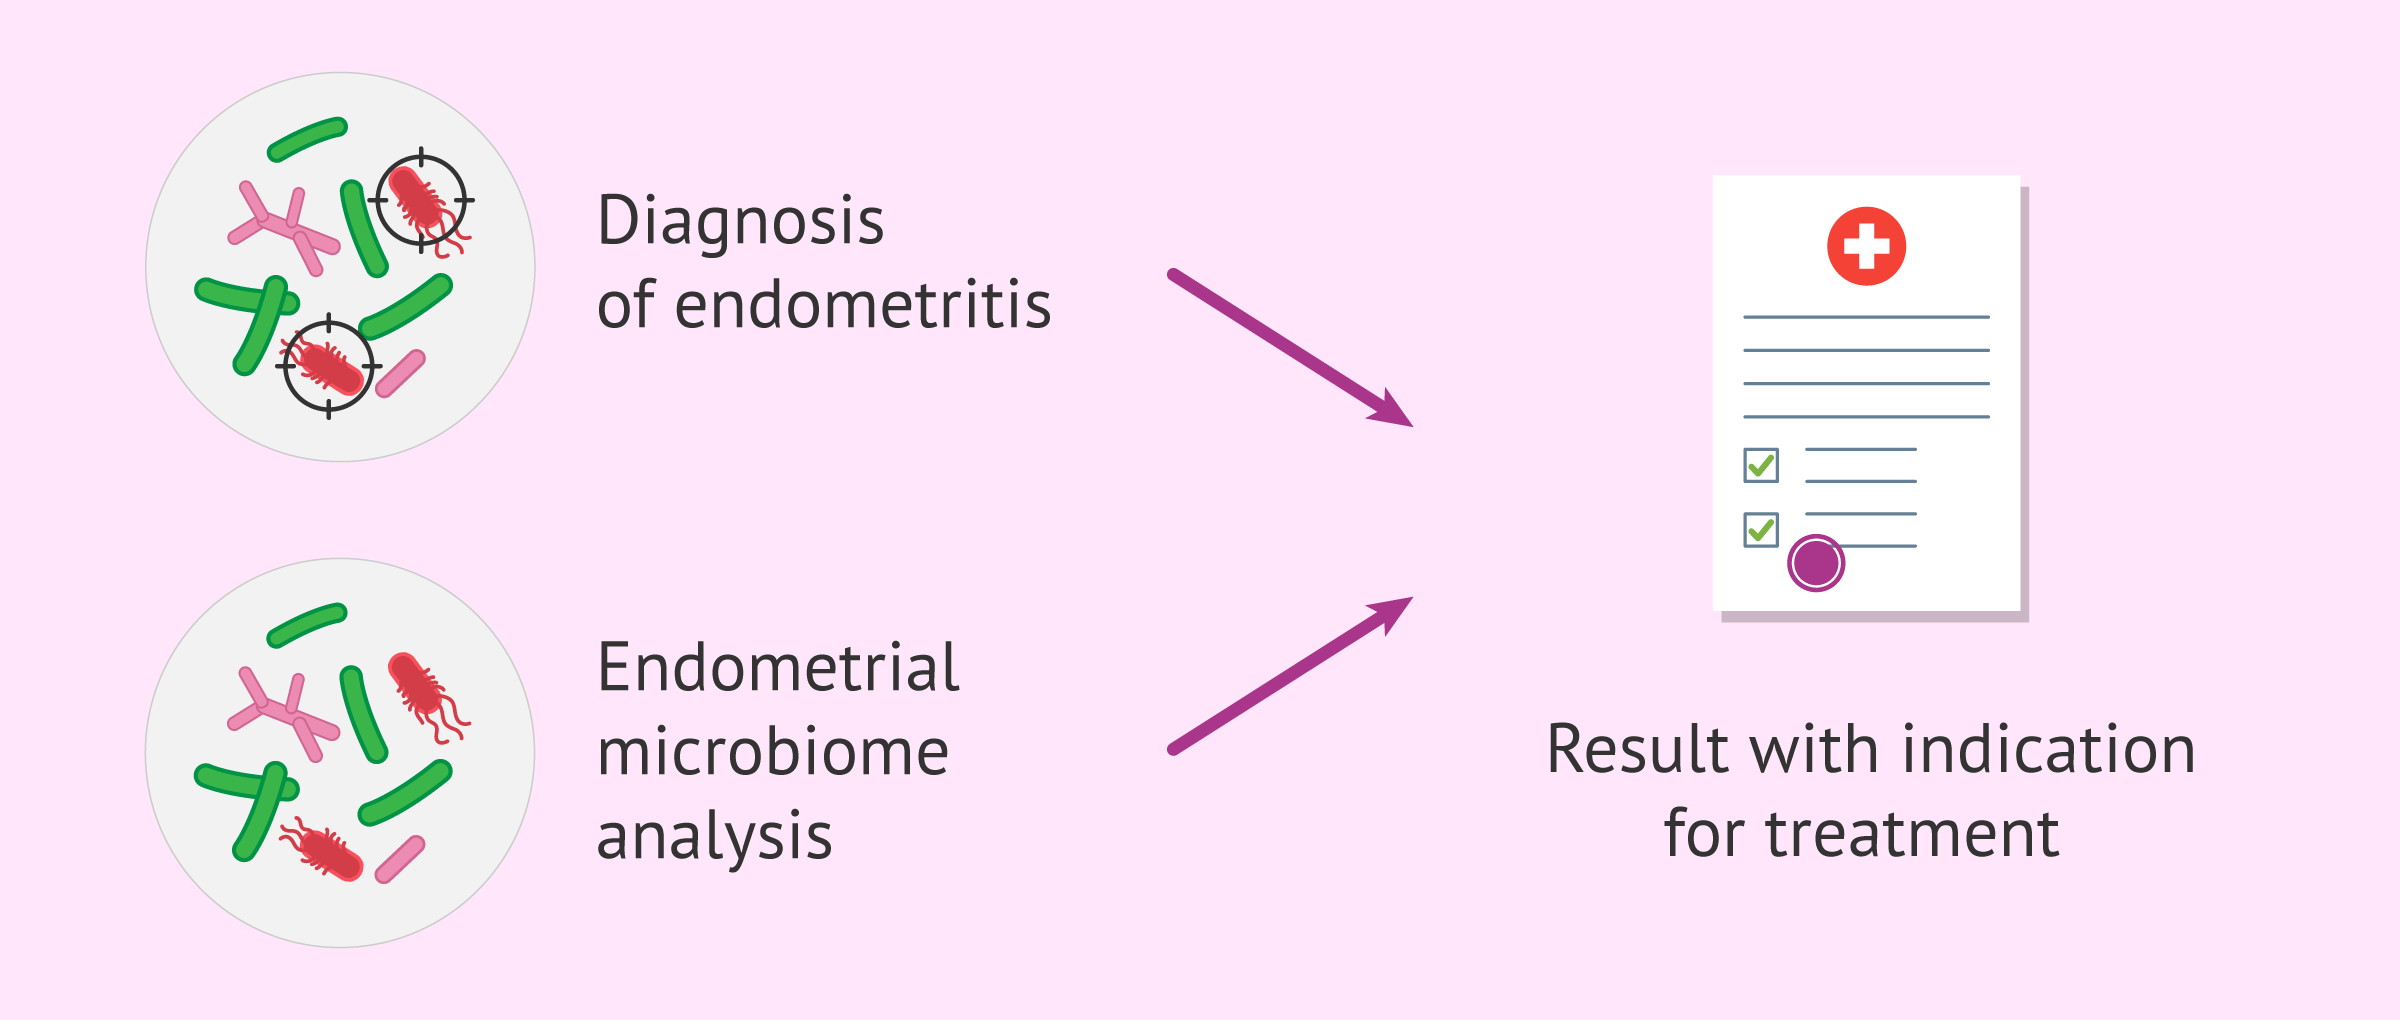 Endometrial microbiome analysis to promote implantation